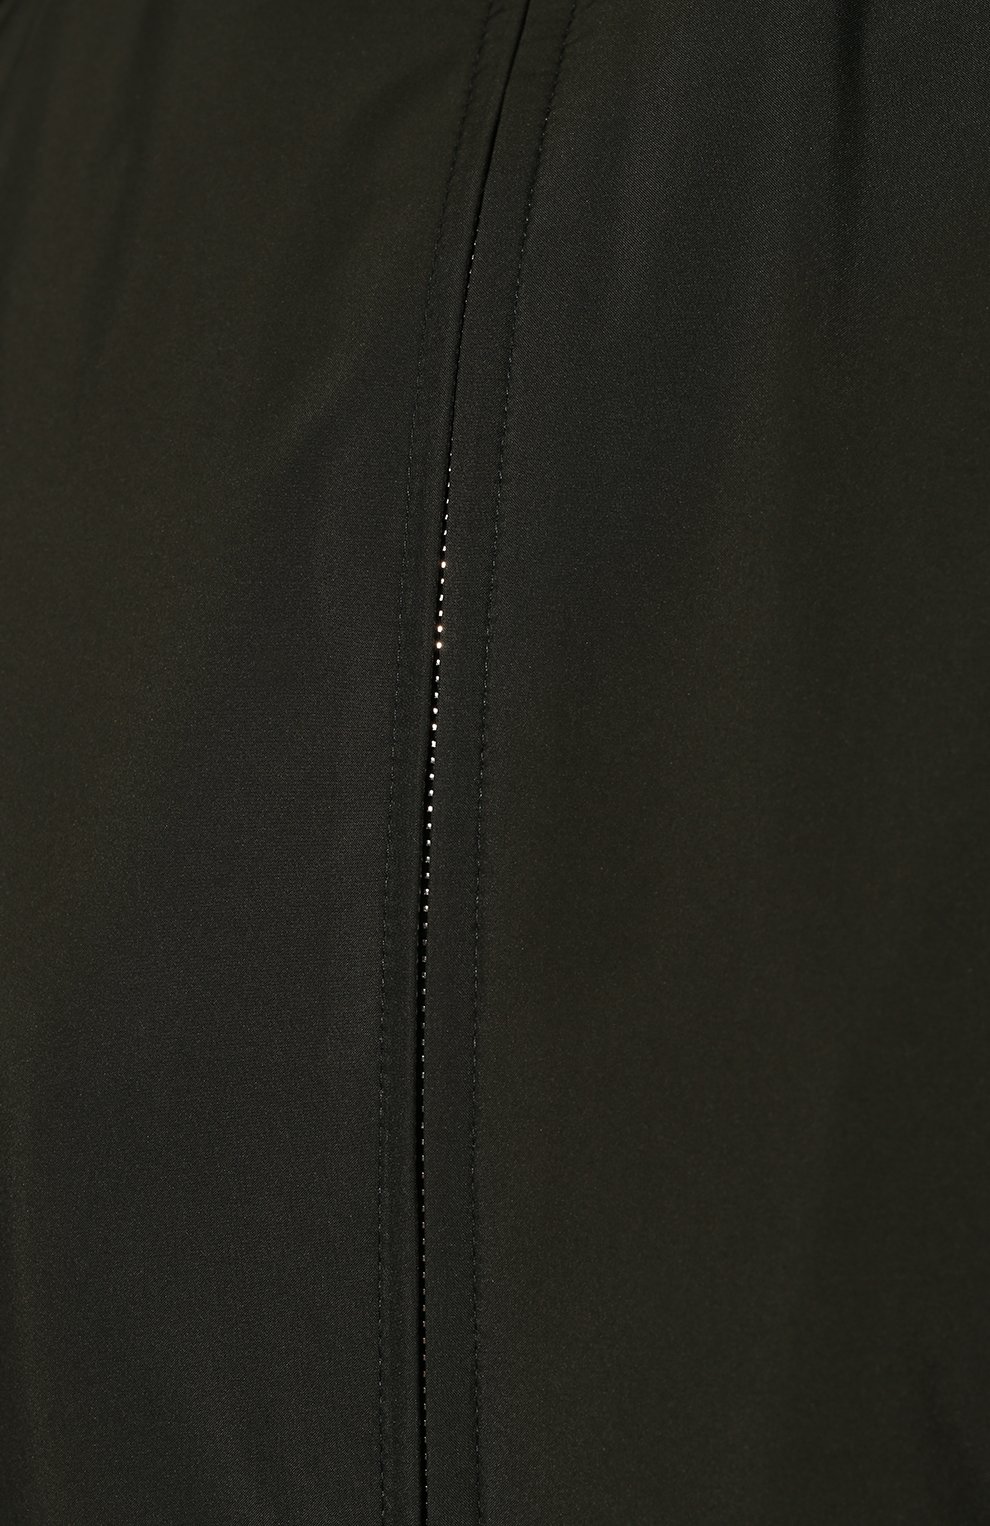 Мужская куртка ANDREA CAMPAGNA хаки цвета, арт. 50900E9BB2600 | Фото 5 (Кросс-КТ: Куртка, Ветровка; Рукава: Длинные; Материал внешний: Синтетический материал; Стили: Милитари, Кэжуэл; Длина (верхняя одежда): Короткие; Материал подклада: Шелк)